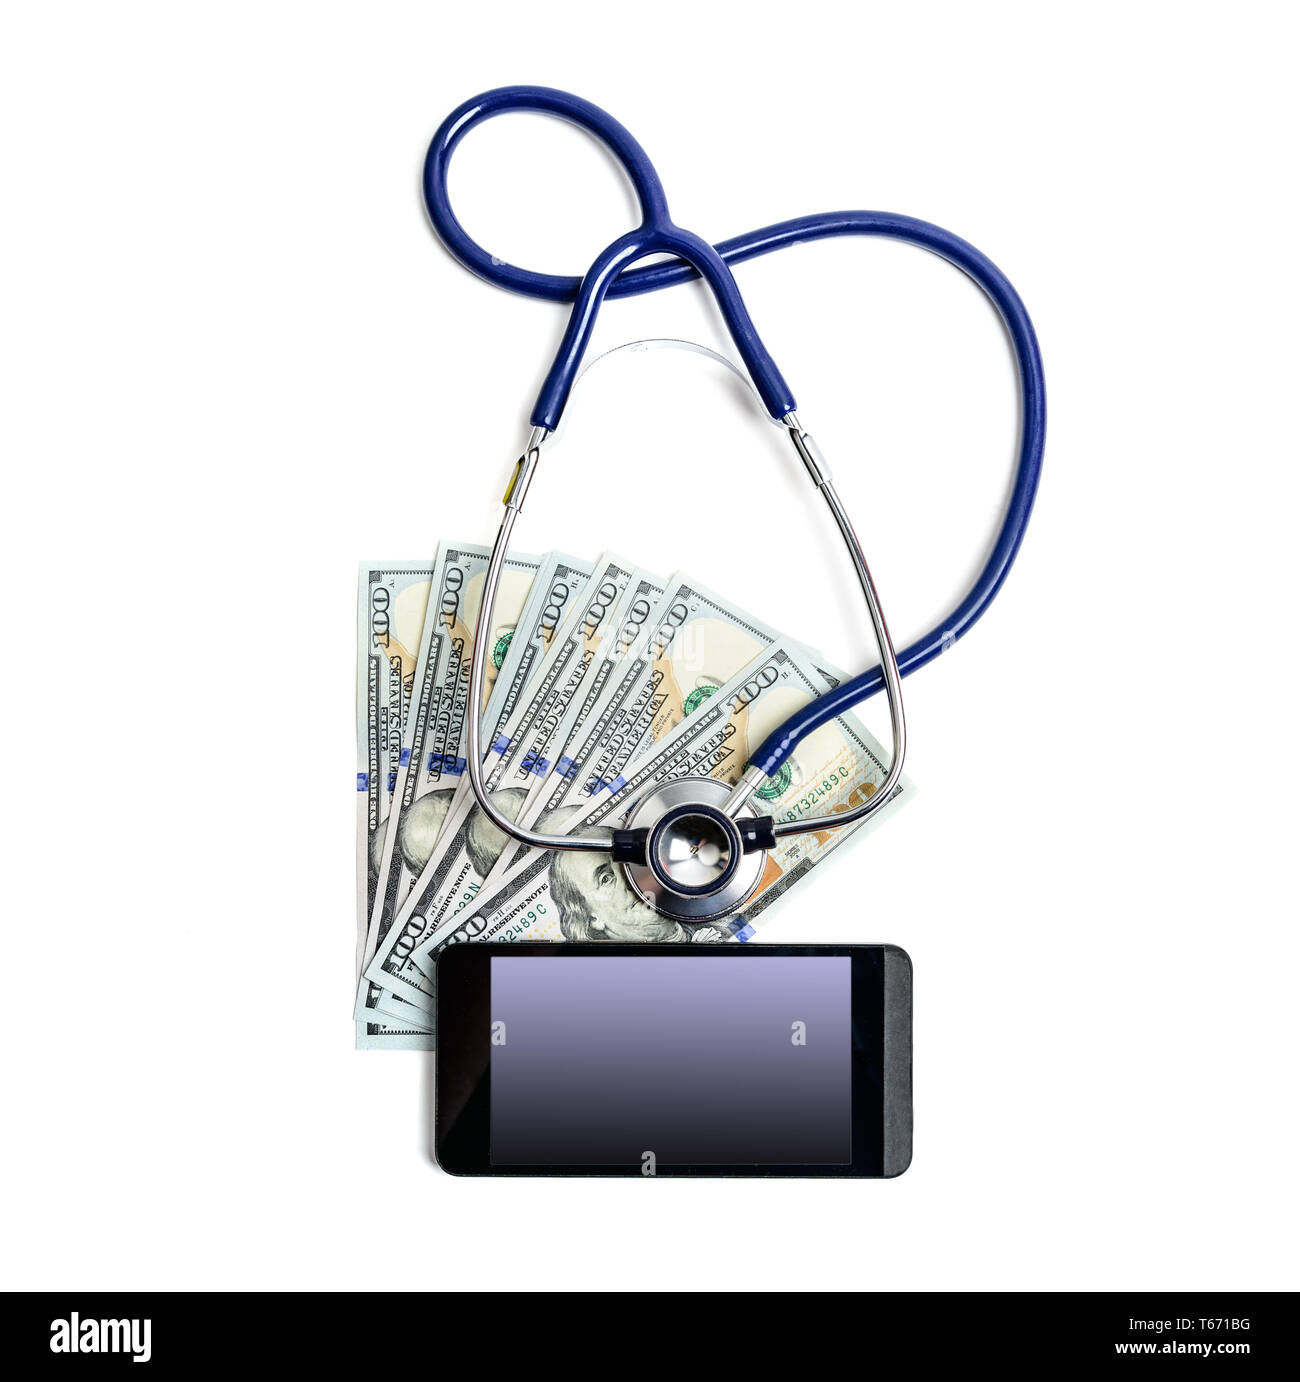 Le stéthoscope des dollars et d'un téléphone mobile avec écran maquette vide pour votre image sur fond blanc Banque D'Images